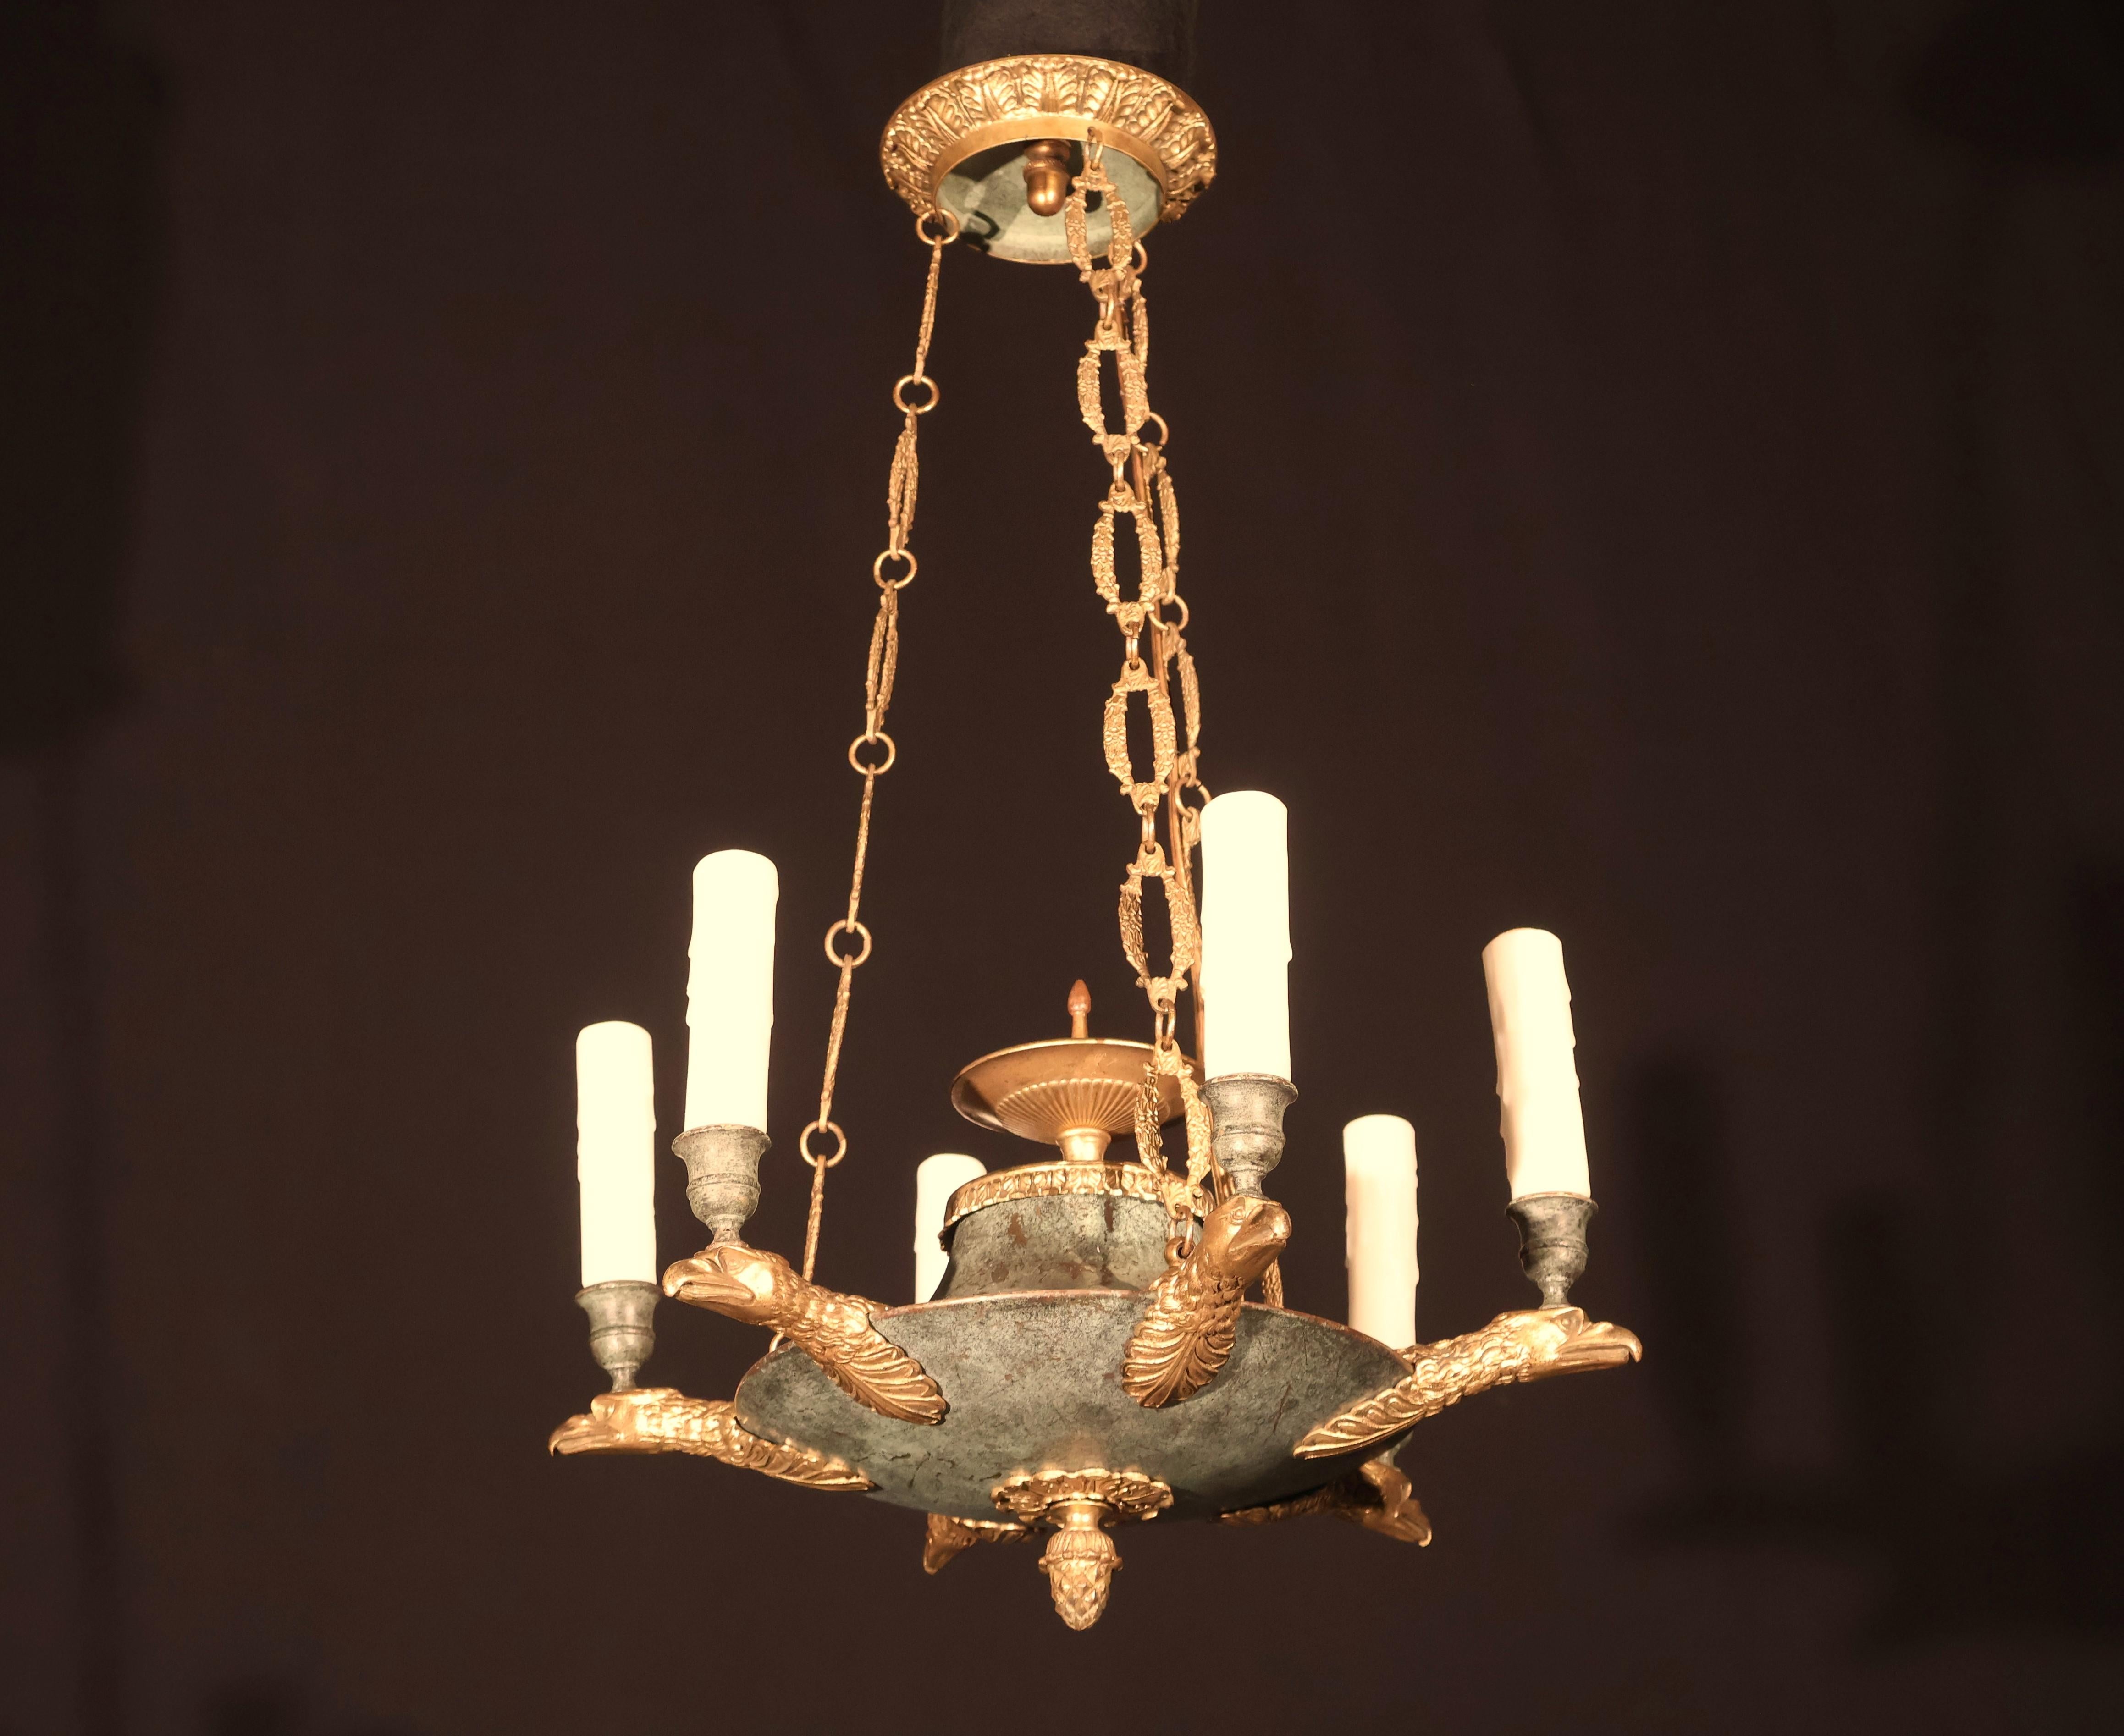 Ein sehr feiner und dekorativer Kronleuchter aus vergoldeter Bronze und patinierter Bronze im Empire-Stil. 6 Lichter. Frankreich, um 1920. 
Abmessungen: Höhe 25